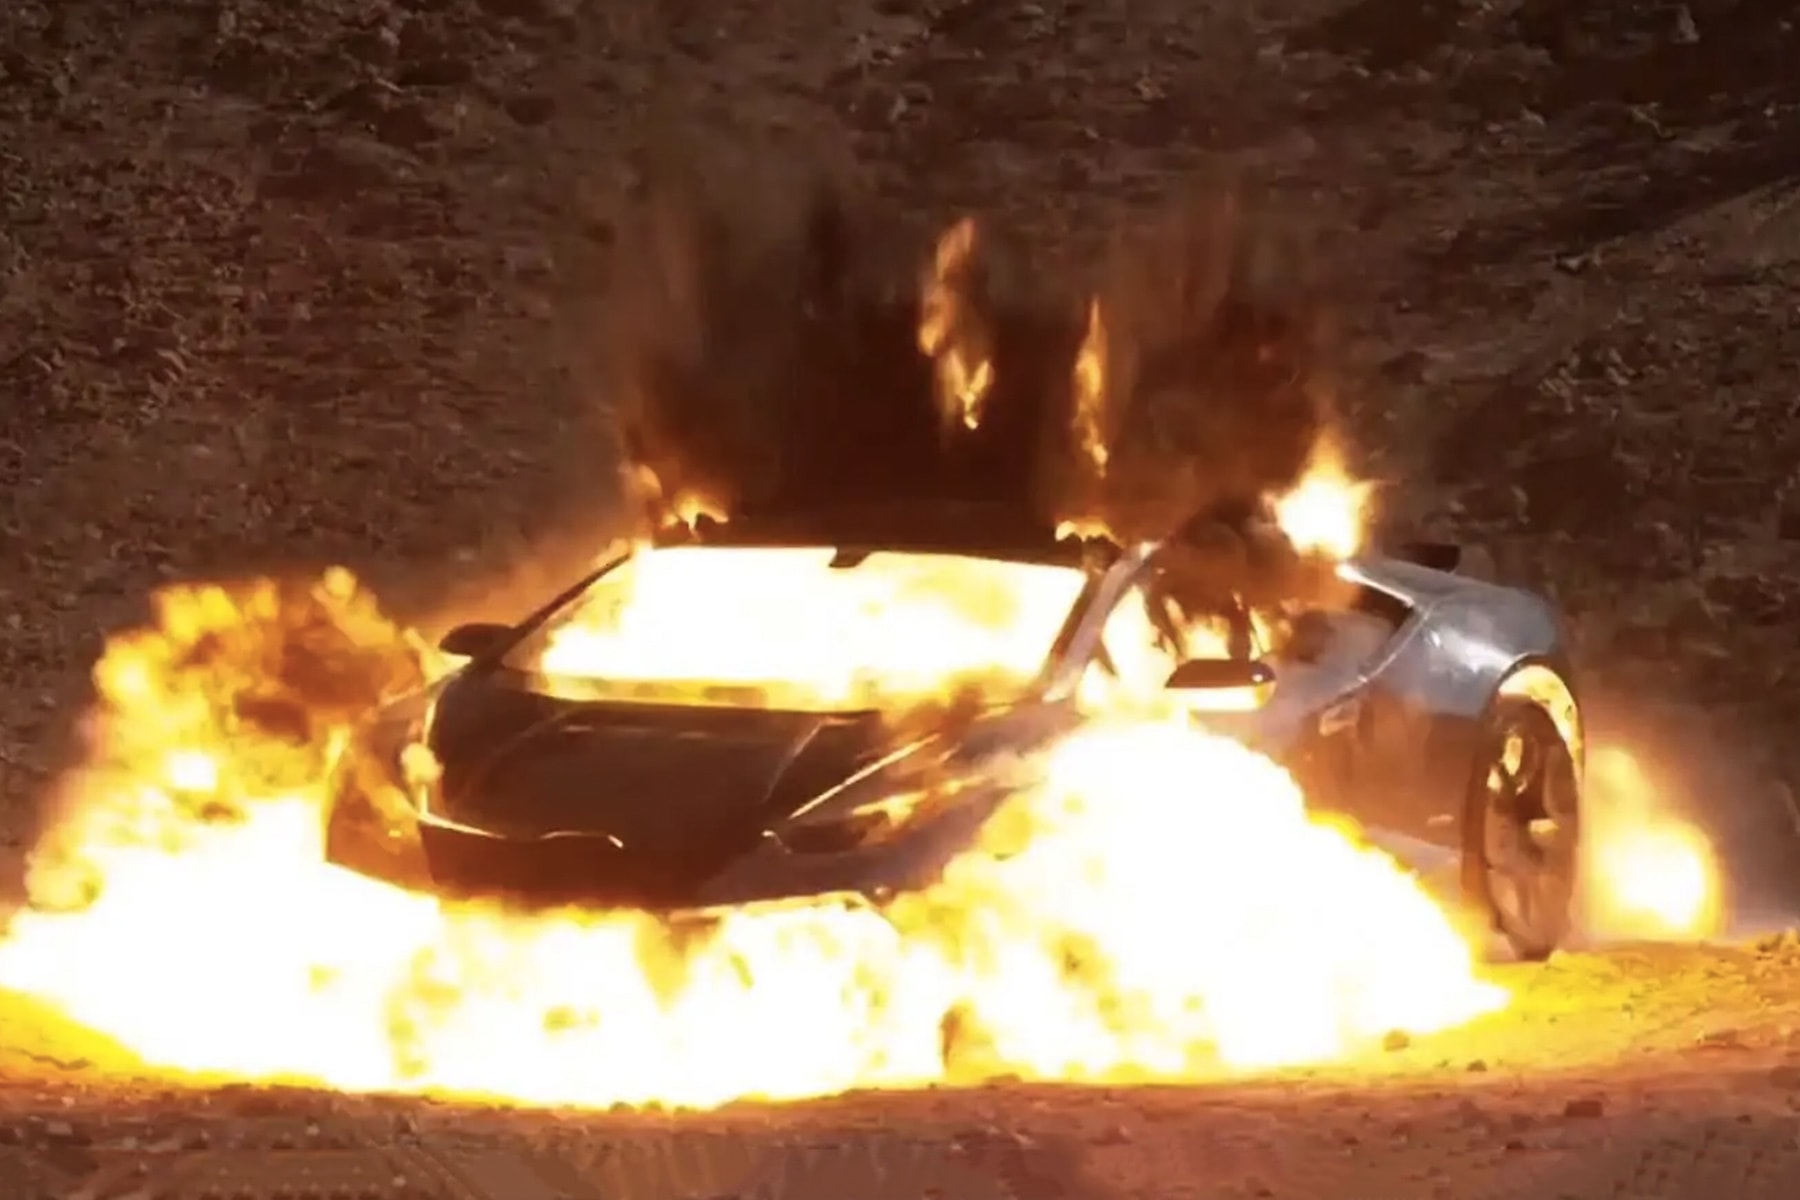 藝術家 Shl0ms 炸毀 Lamborghini 跑車打造 999 枚「殘骸」NFT 項目